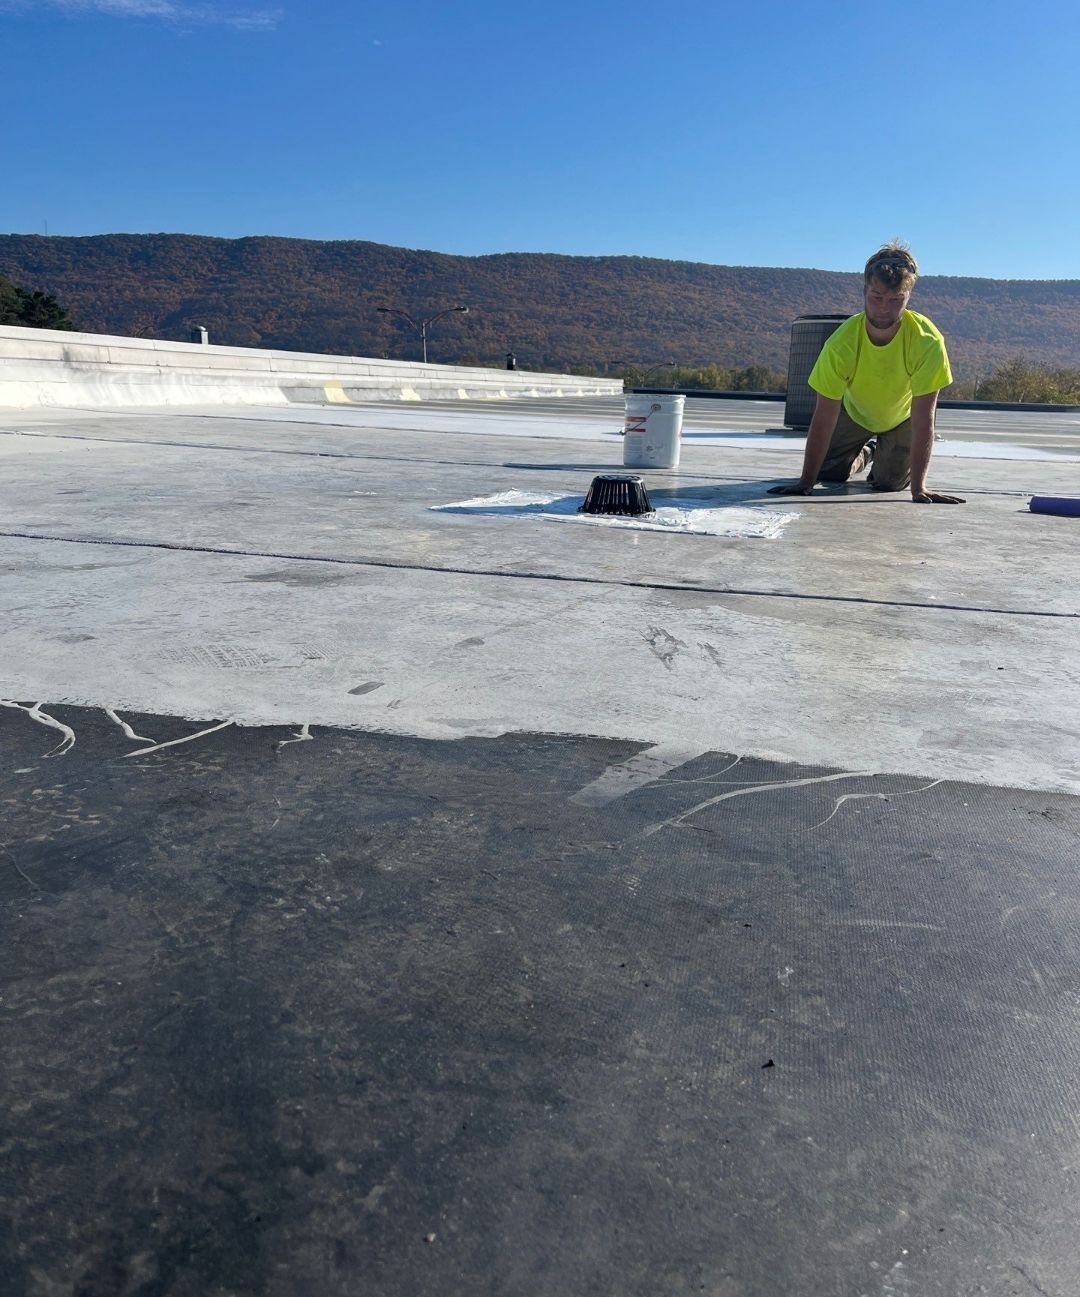 kings commercial roofing llc - roofing repair - flat roof repair spray coating